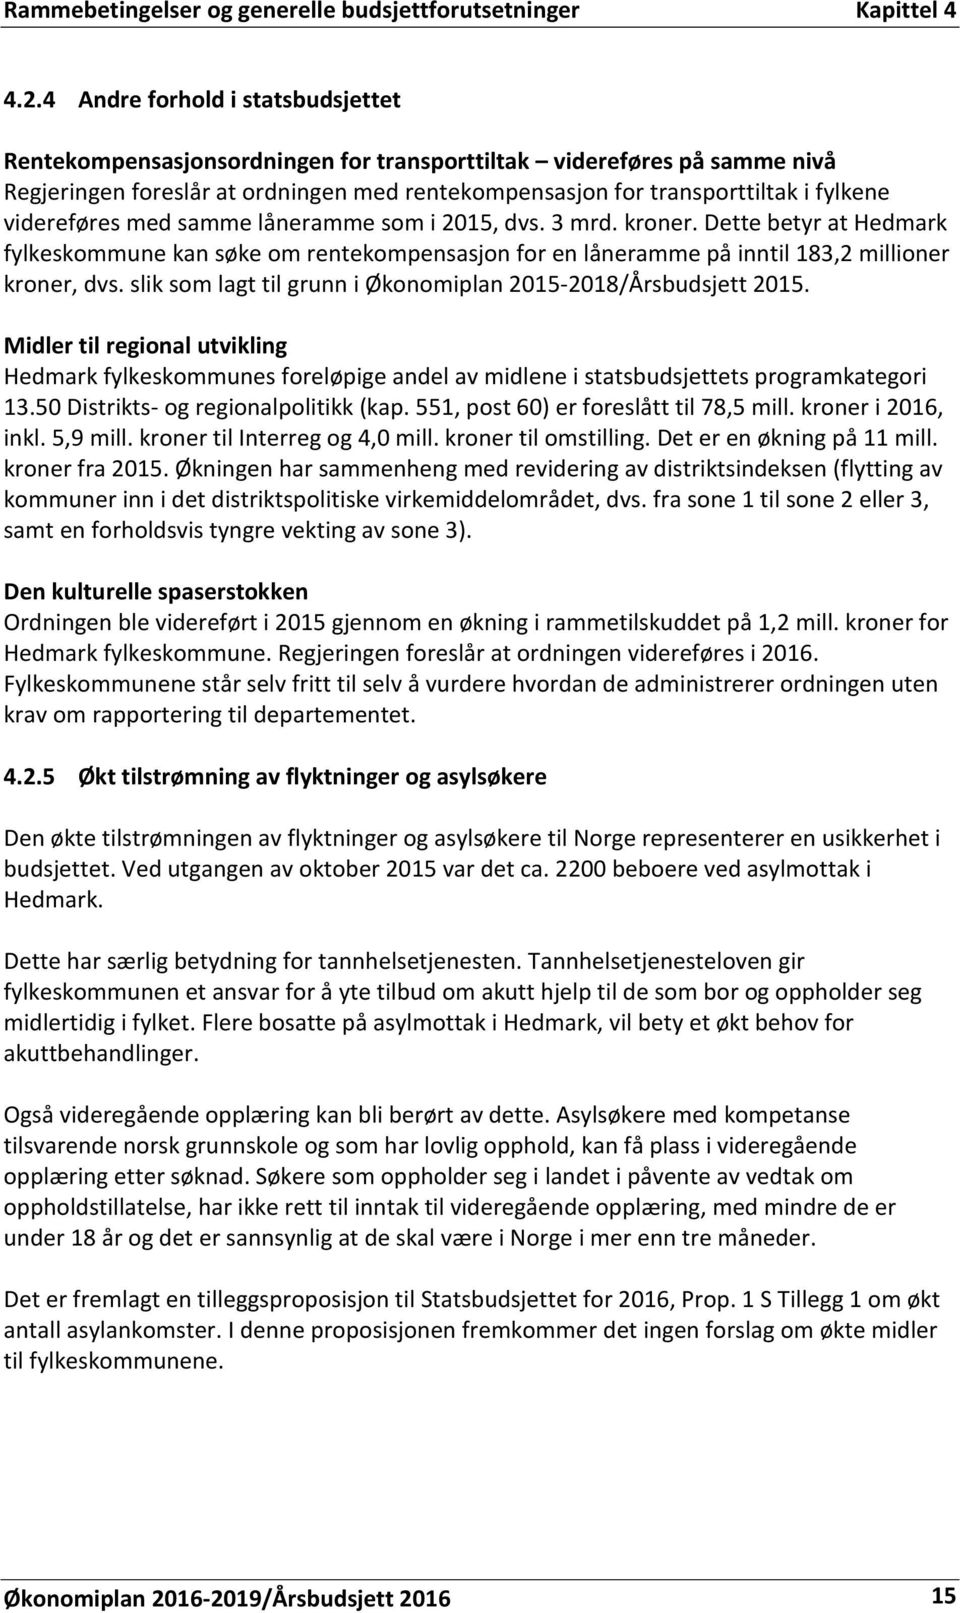 videreføres med samme låneramme som i 2015, dvs. 3 mrd. kroner. Dette betyr at Hedmark fylkeskommune kan søke om rentekompensasjon for en låneramme på inntil 183,2 millioner kroner, dvs.